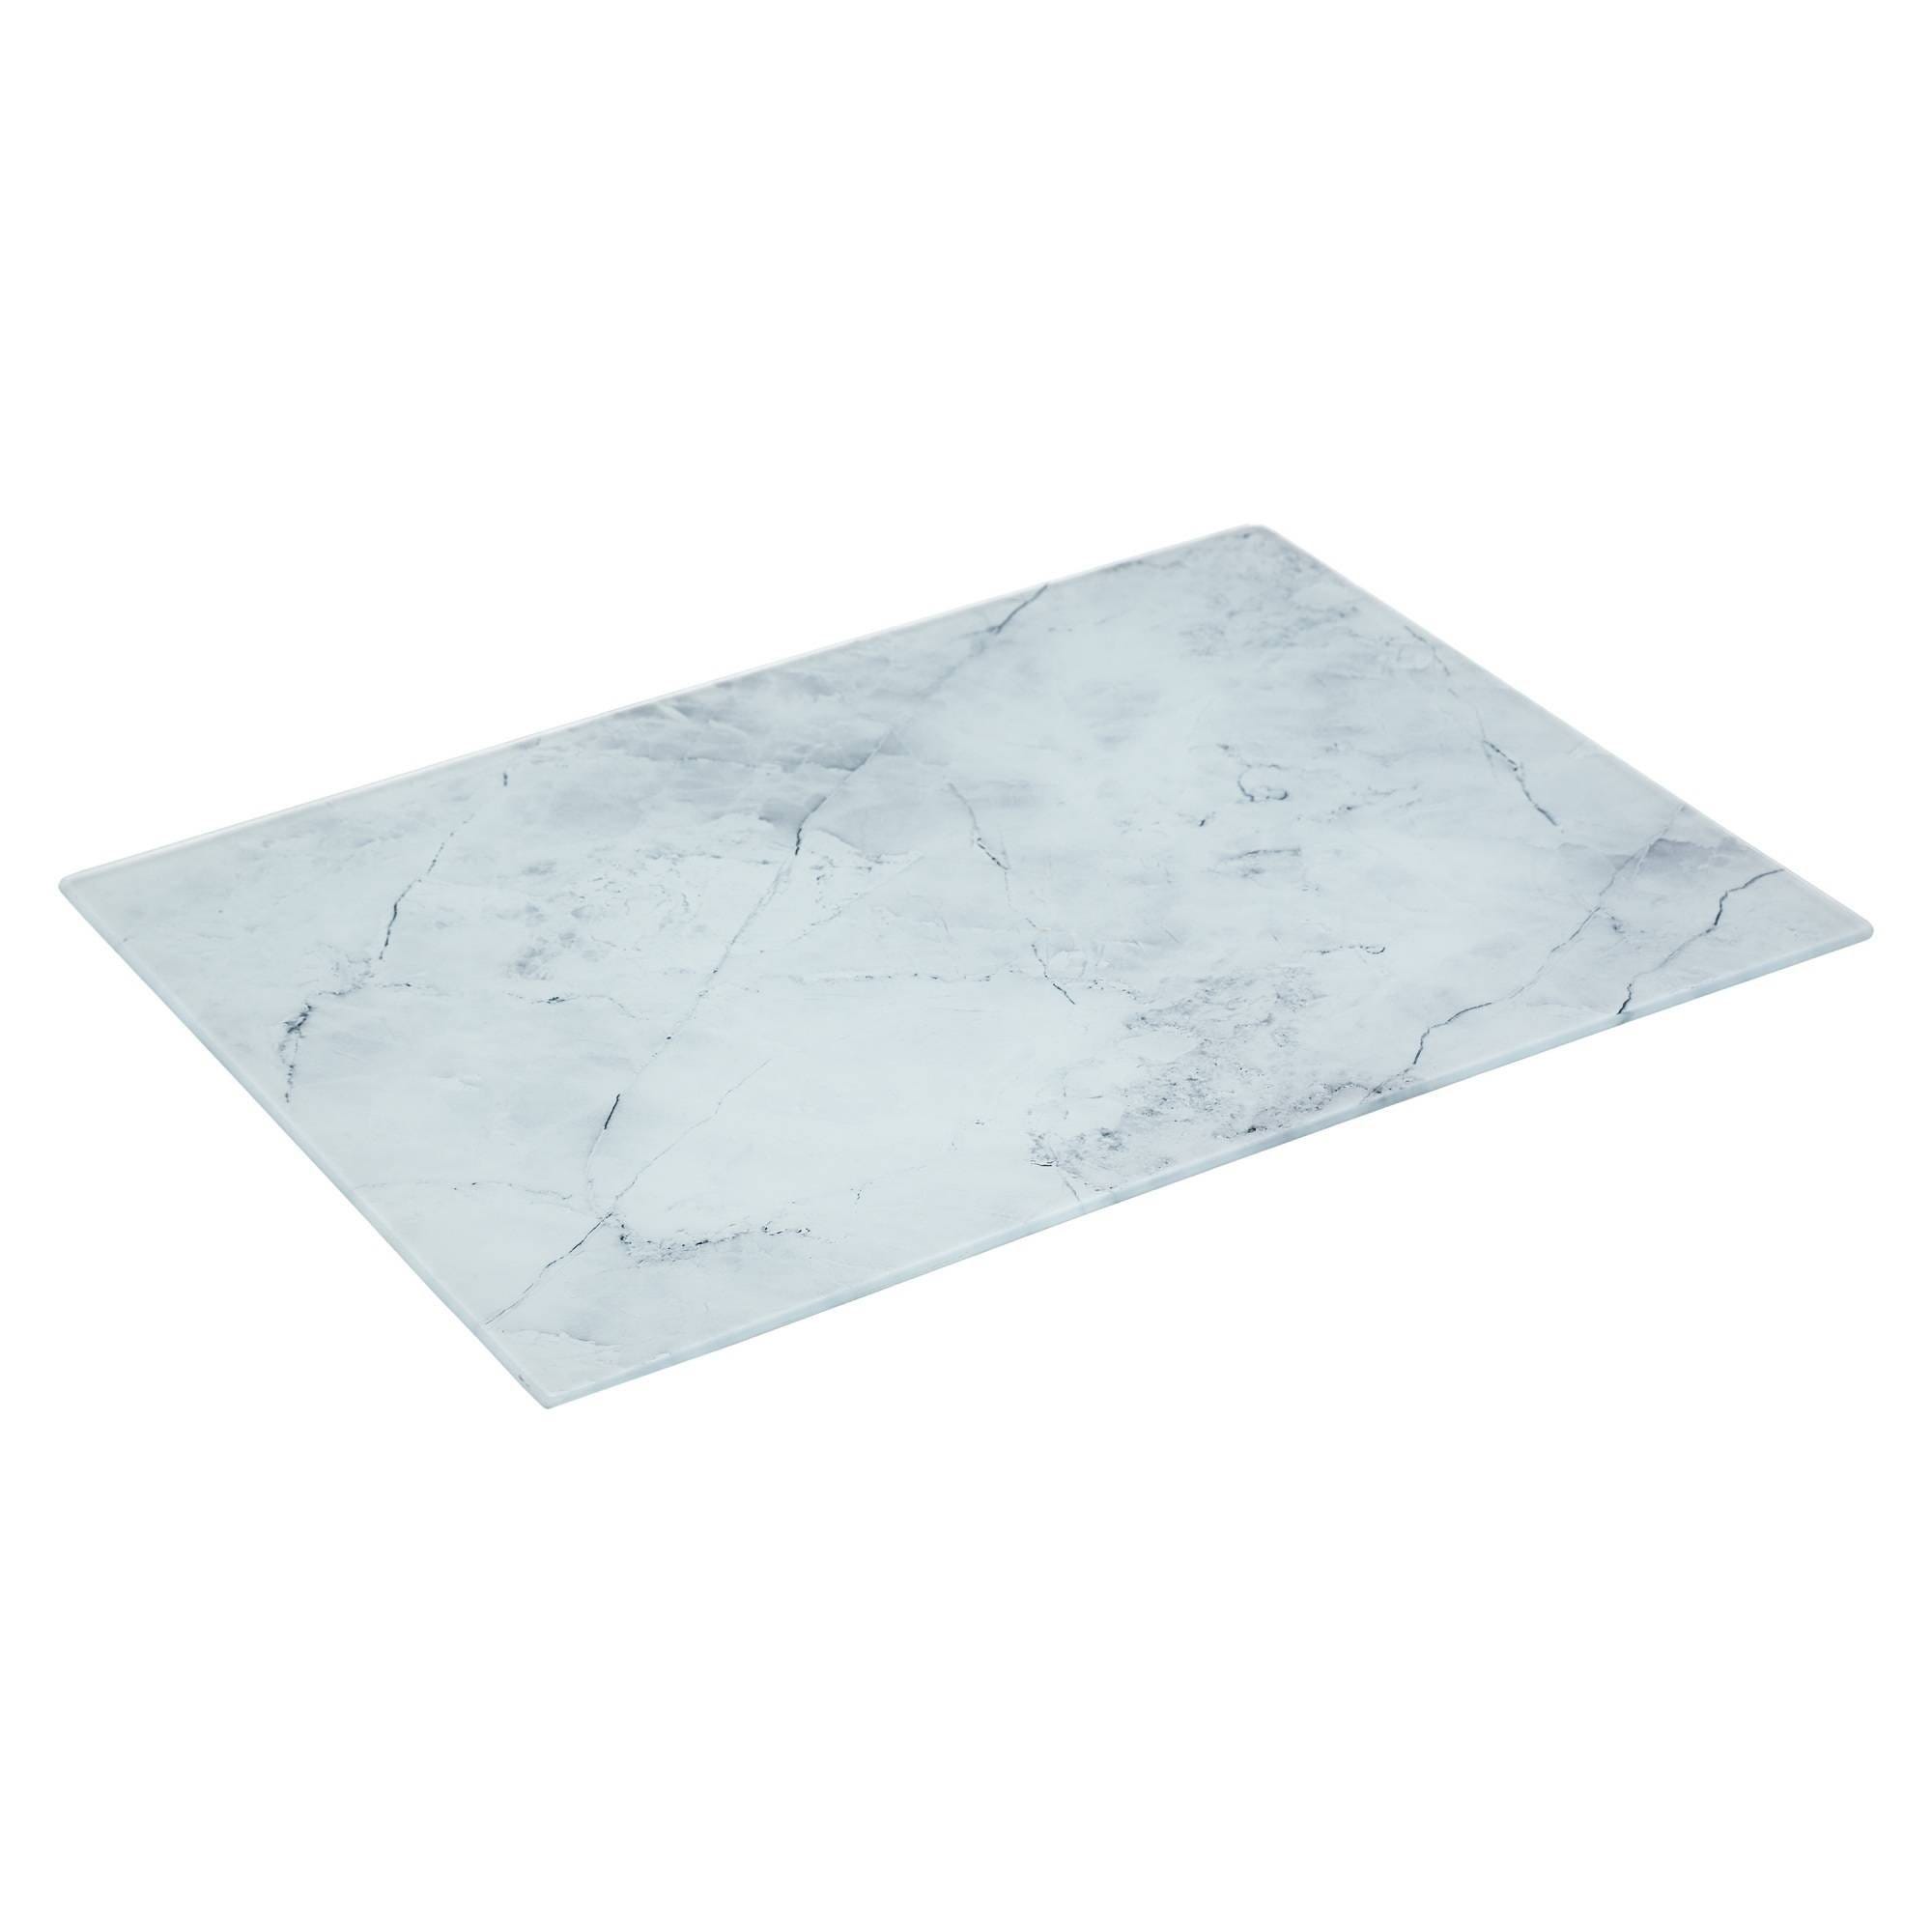 Planche à découper en verre effet marbre blanc (30 x 40 cm).[525